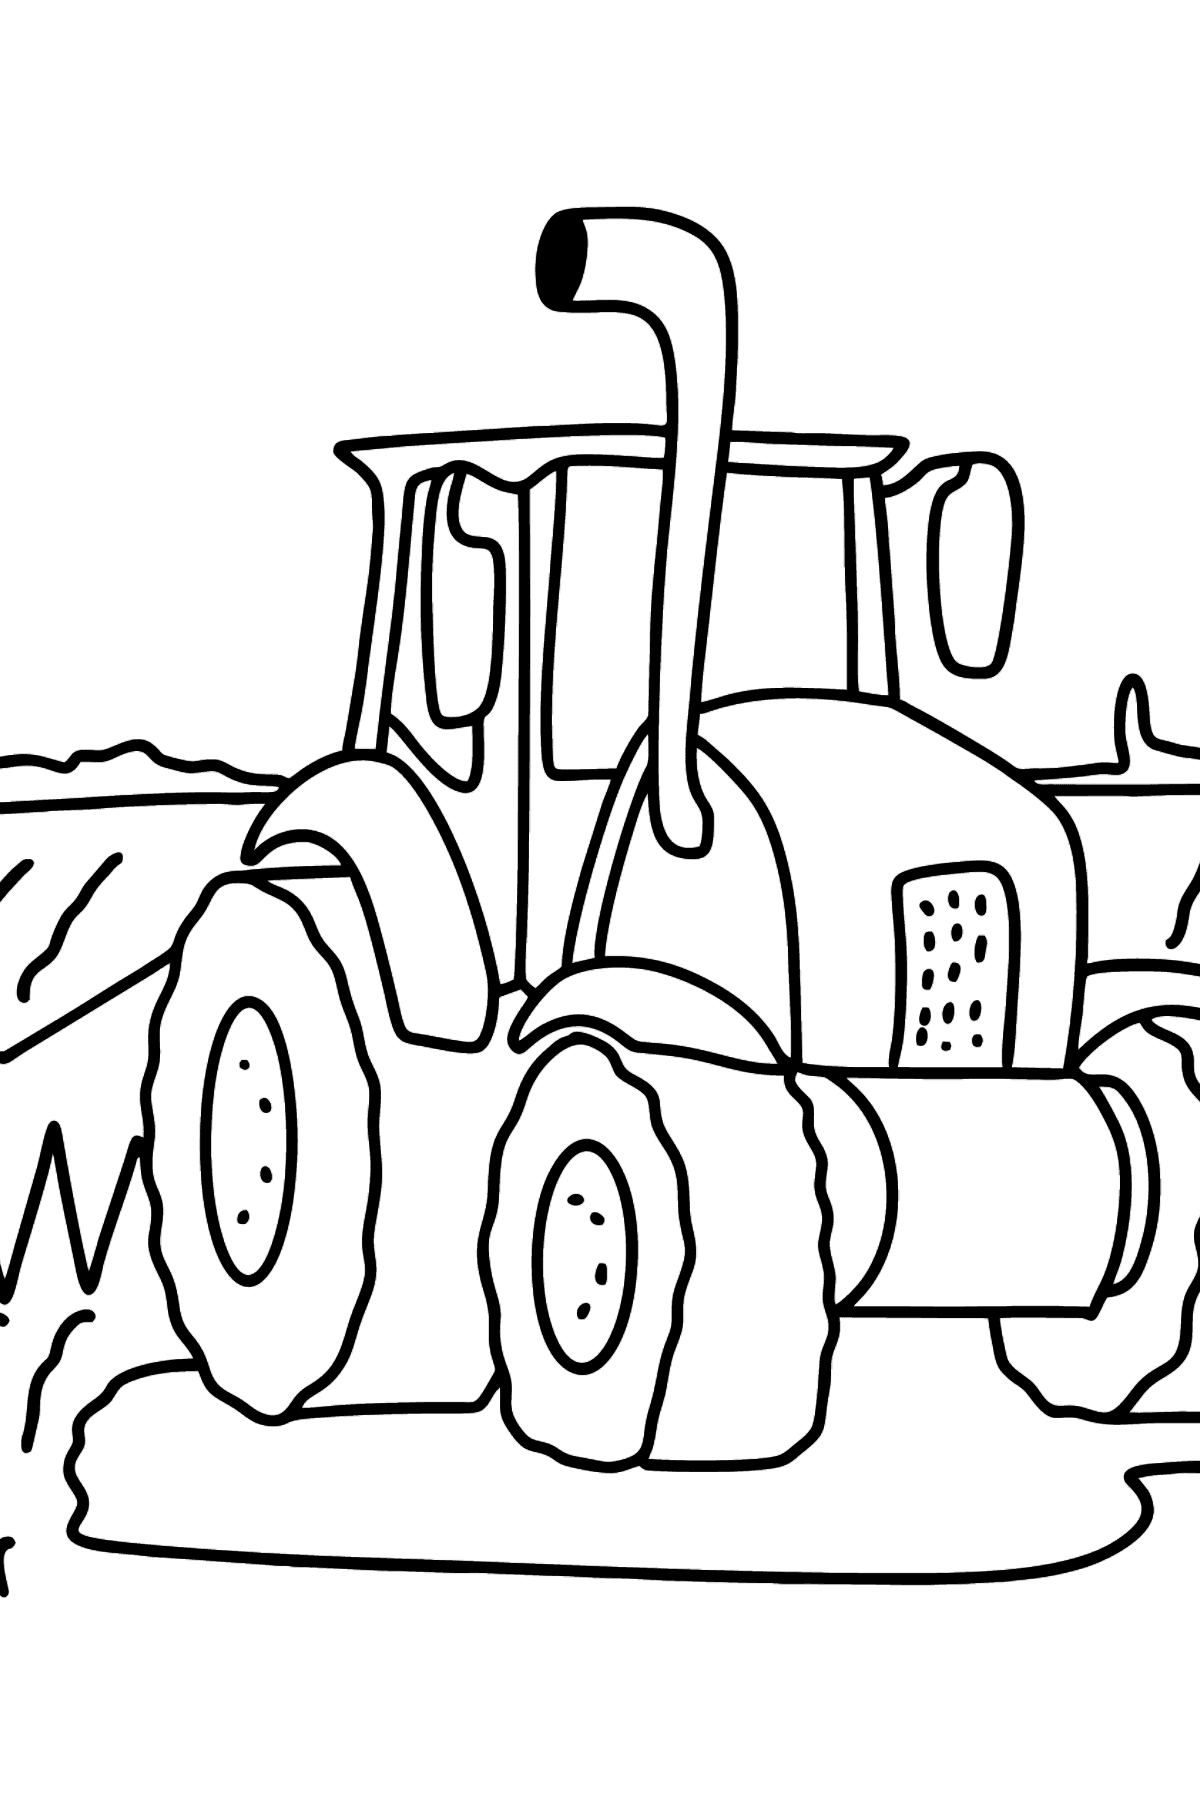 Tegning til fargelegging traktor i marka - Tegninger til fargelegging for barn